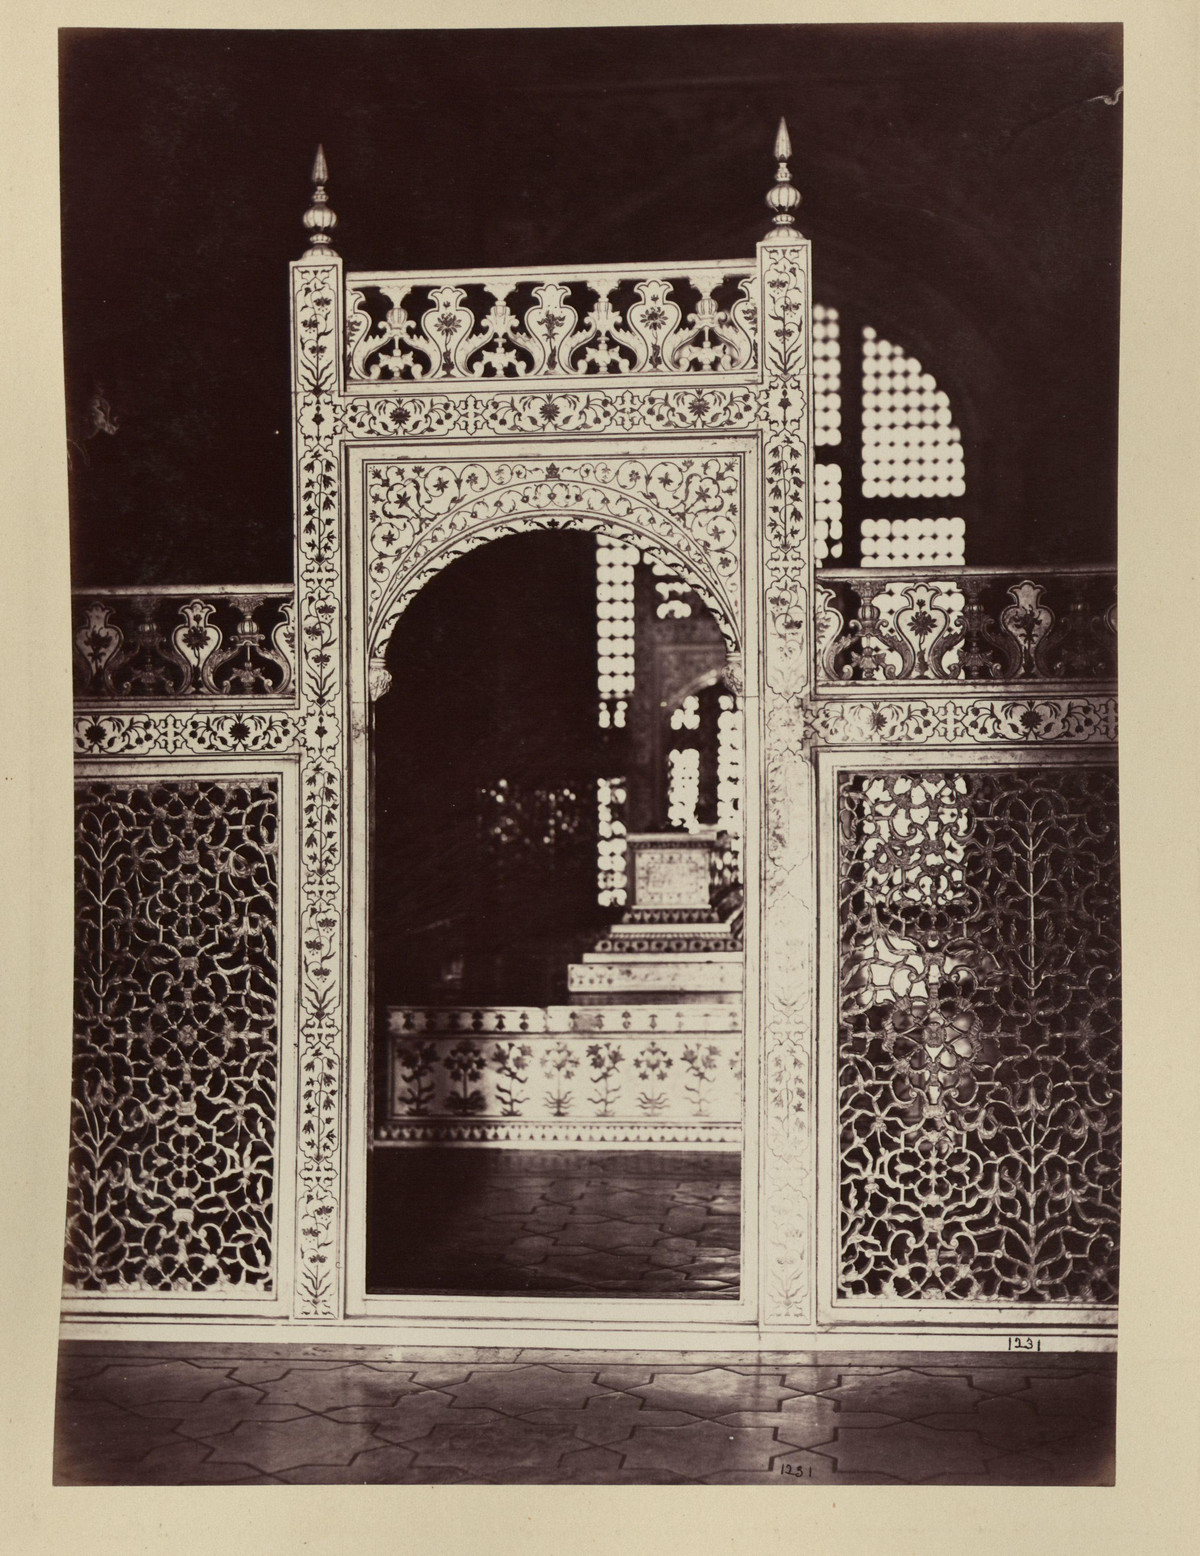 Albom fotografii indiiskoi arhitektury vzgliadov liudei 44